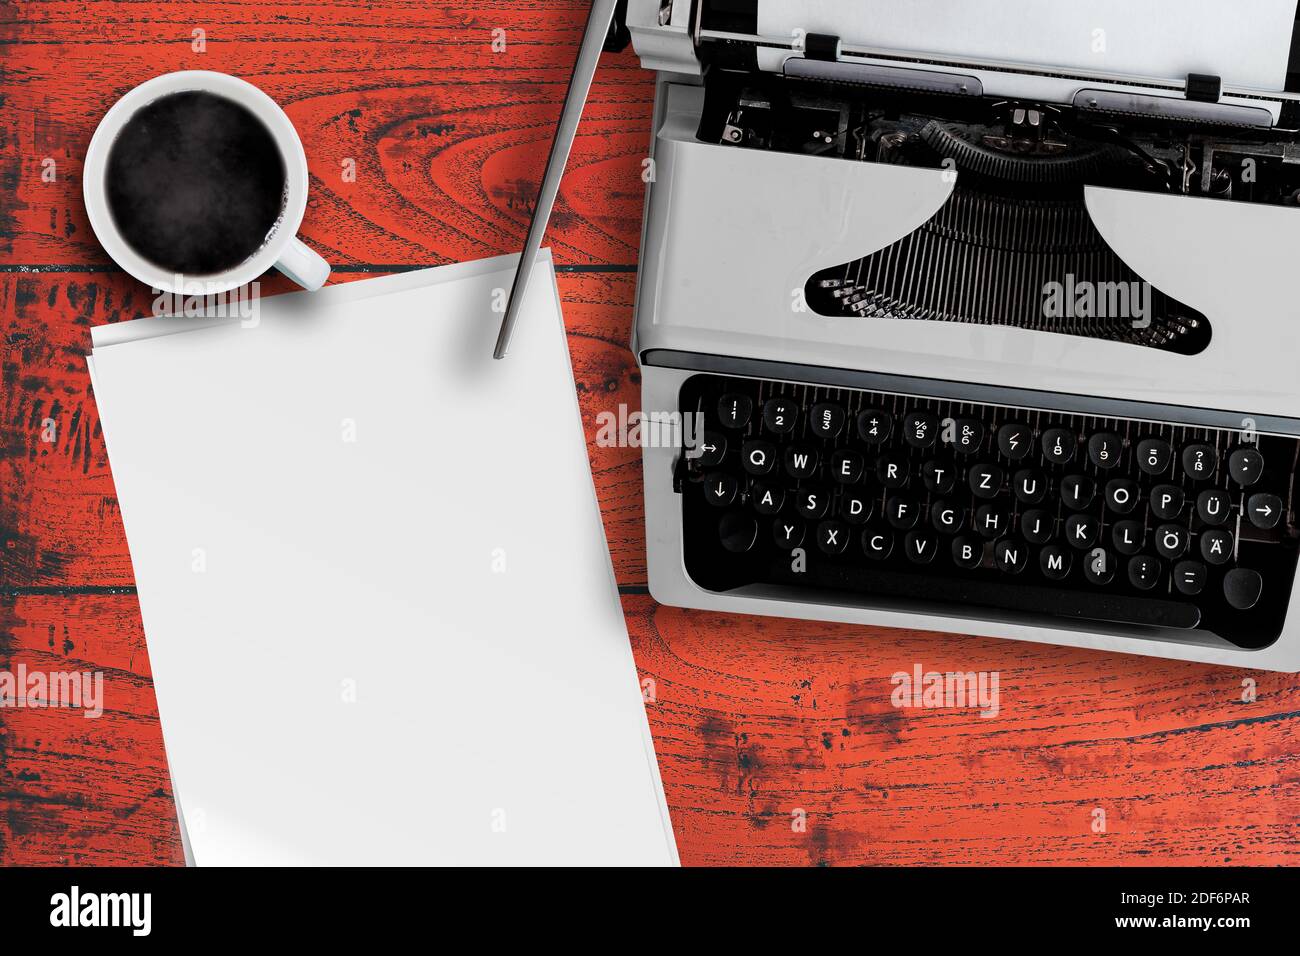 Direkt über der Ansicht der alten Schreibmaschine, Tasse dampfenden heißen Kaffee und Stapel leeres Schreibpapier auf rotem Holzschreibtisch Stockfoto